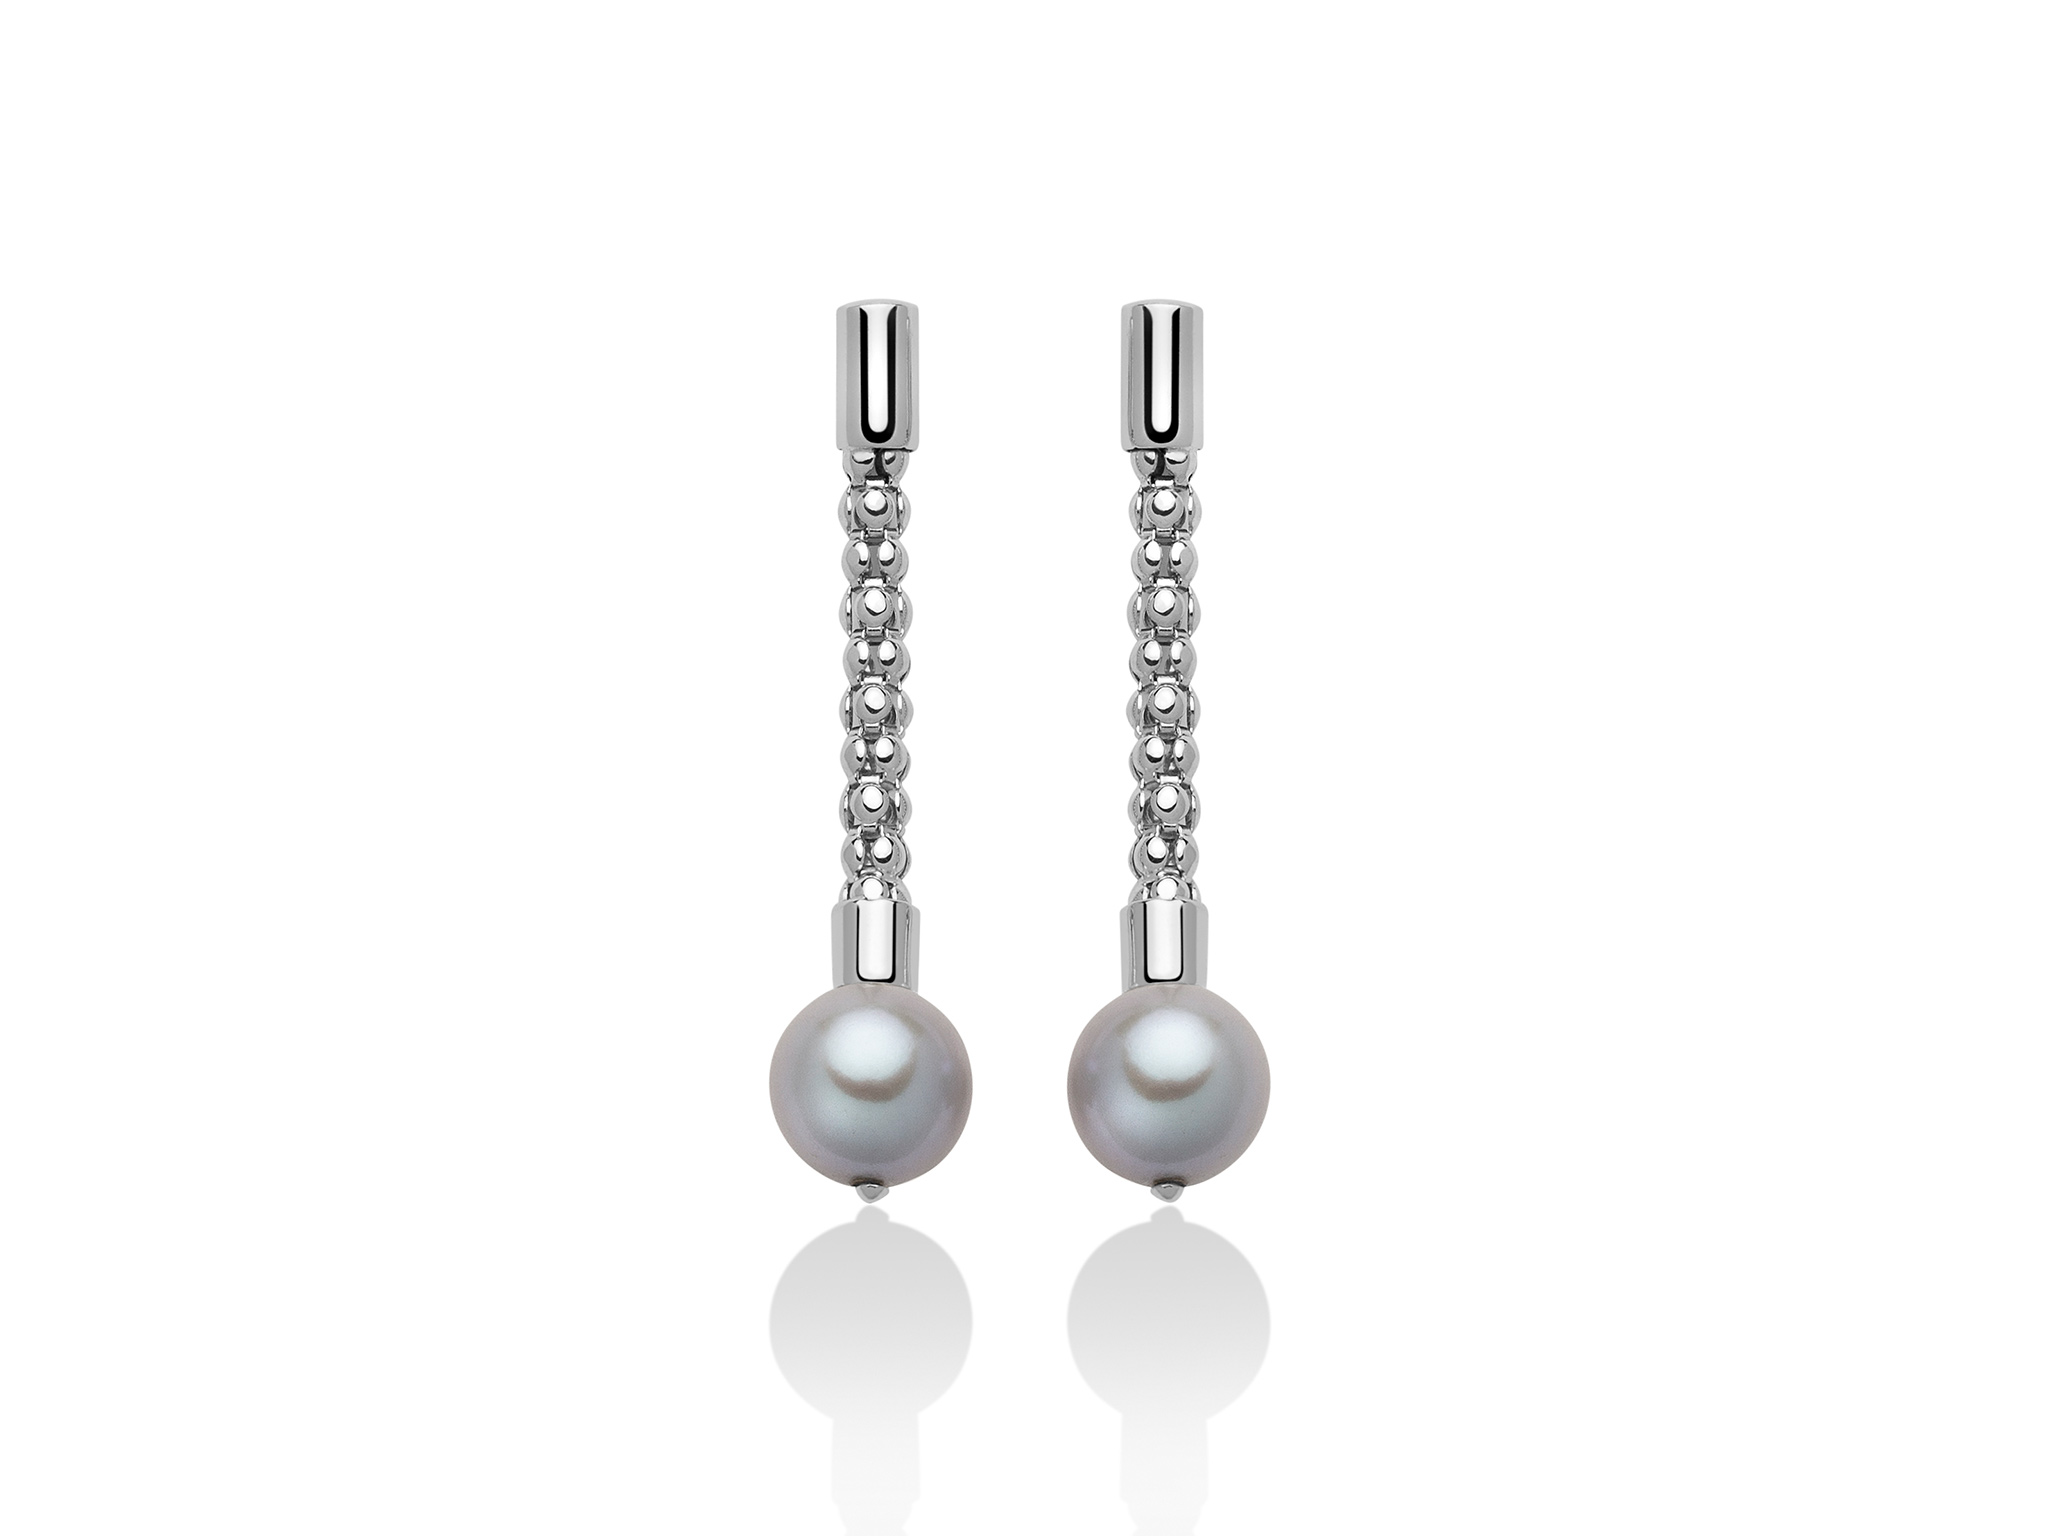 Orecchini pendenti con maglia coreana, in argento con perle - PER2410